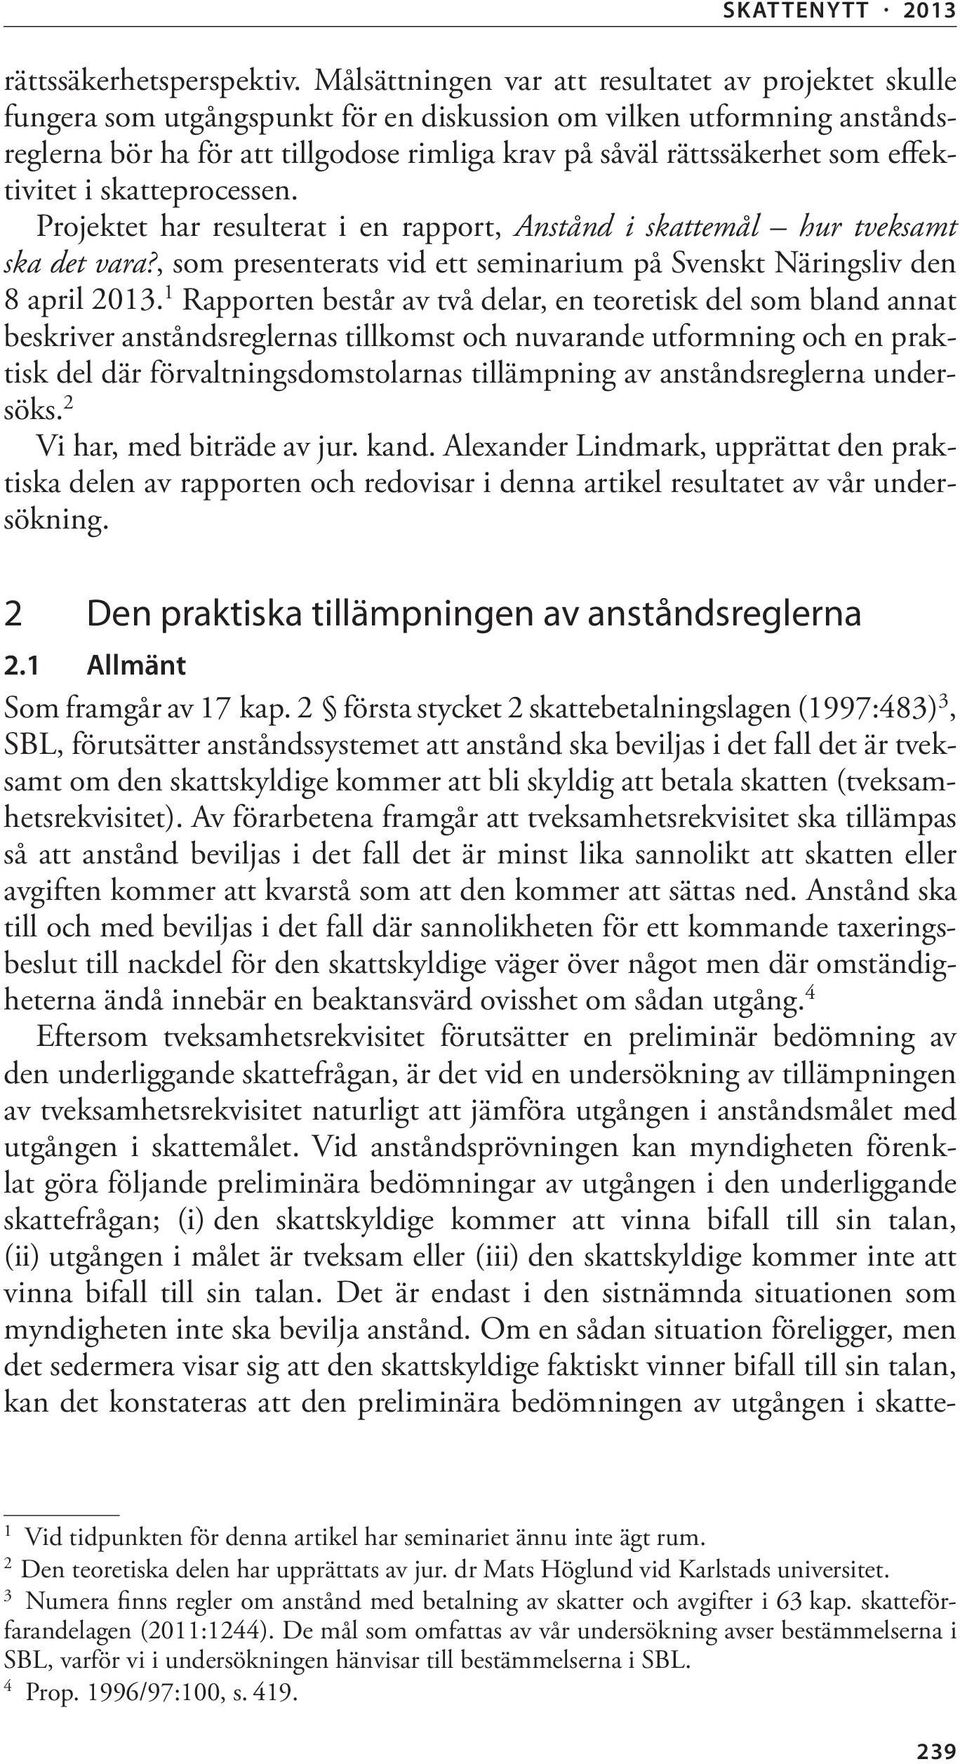 effektivitet i skatteprocessen. Projektet har resulterat i en rapport, Anstånd i skattemål hur tveksamt ska det vara?, som presenterats vid ett seminarium på Svenskt Näringsliv den 8 april 2013.